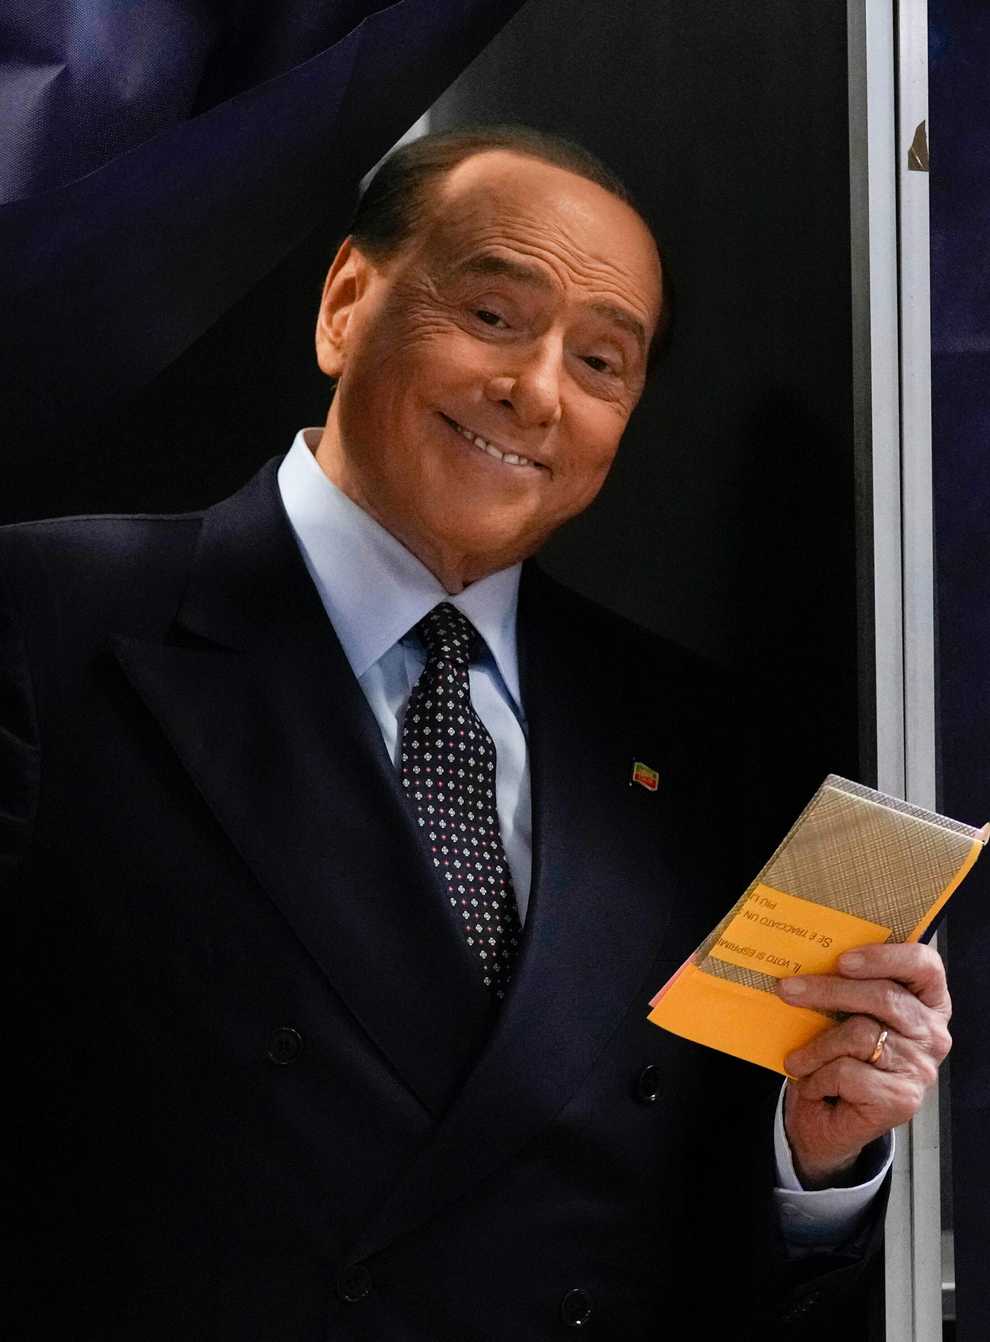 Silvio Berlusconi casts his vote in Milan (Antonio Calanni/AP)